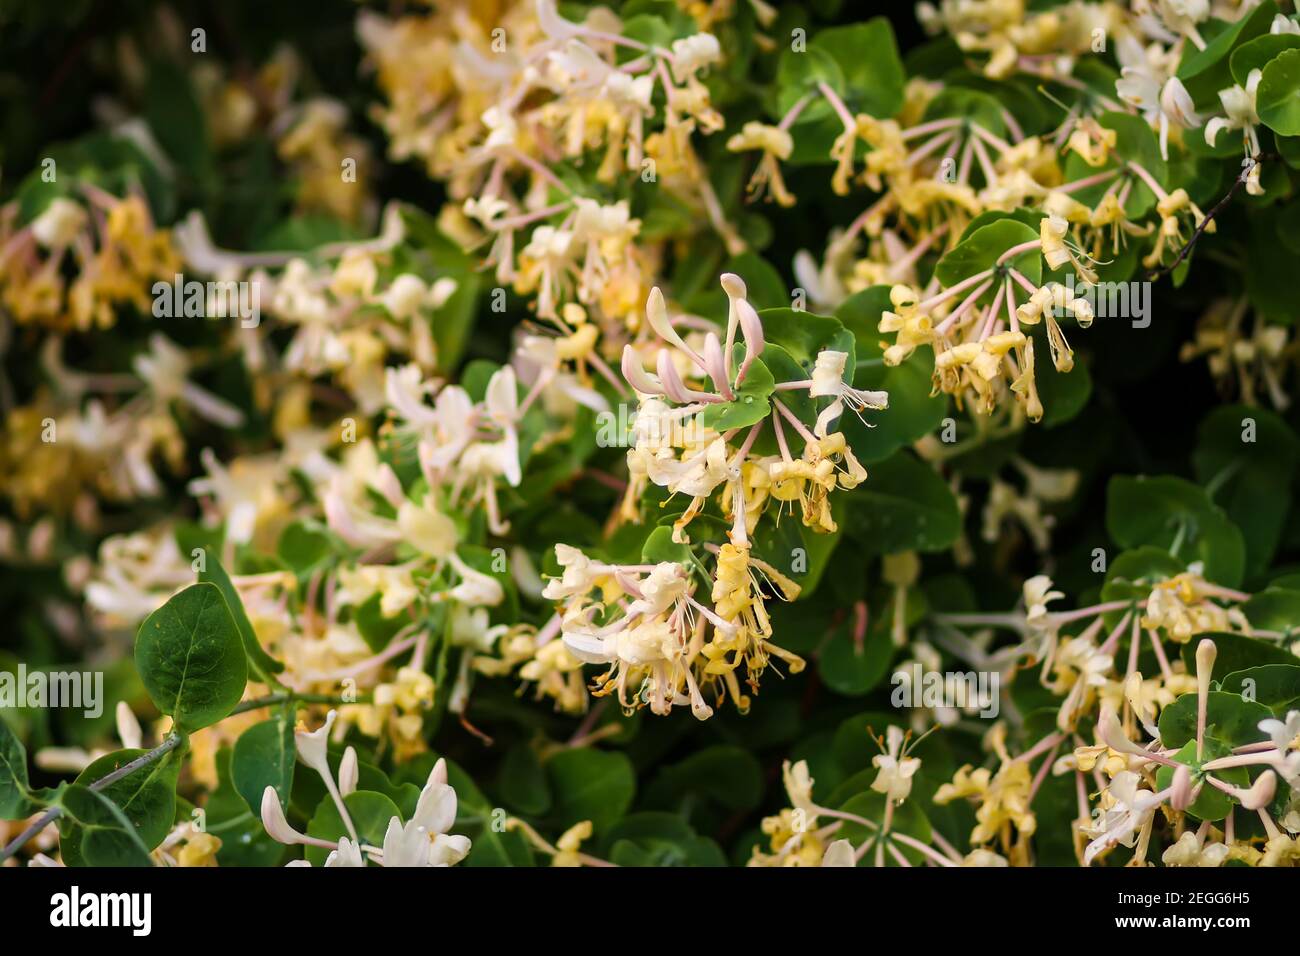 Honeysuckle white fragrant flowers in spring park. Stock Photo